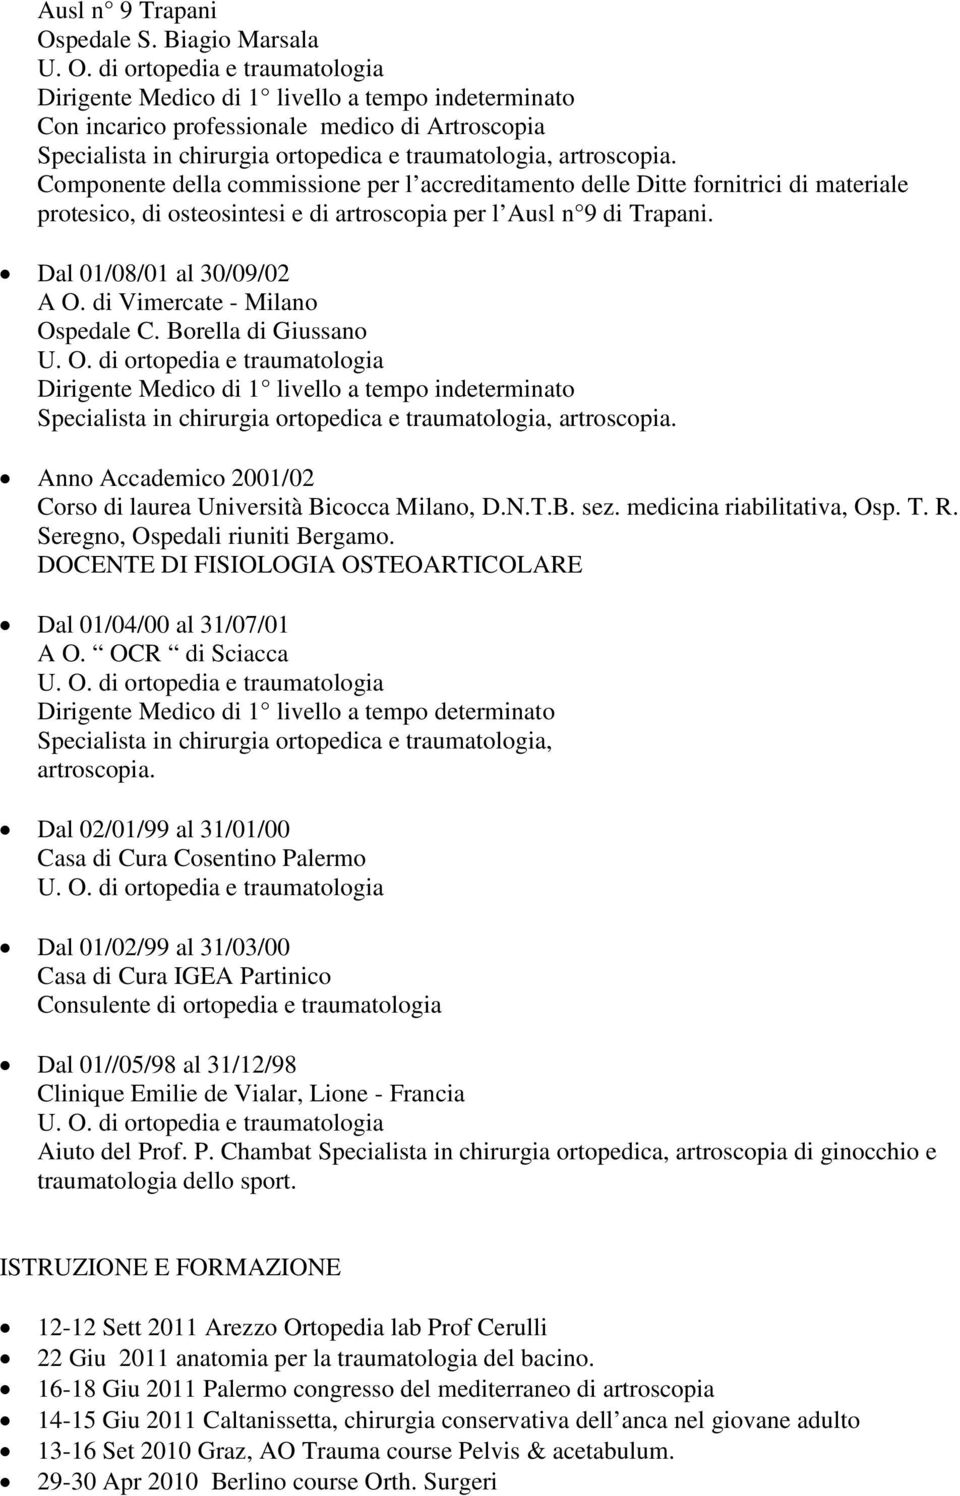 materiale protesico, di osteosintesi e di artroscopia per l Ausl n 9 di Trapani. Dal 01/08/01 al 30/09/02 A O. di Vimercate - Milano Ospedale C.